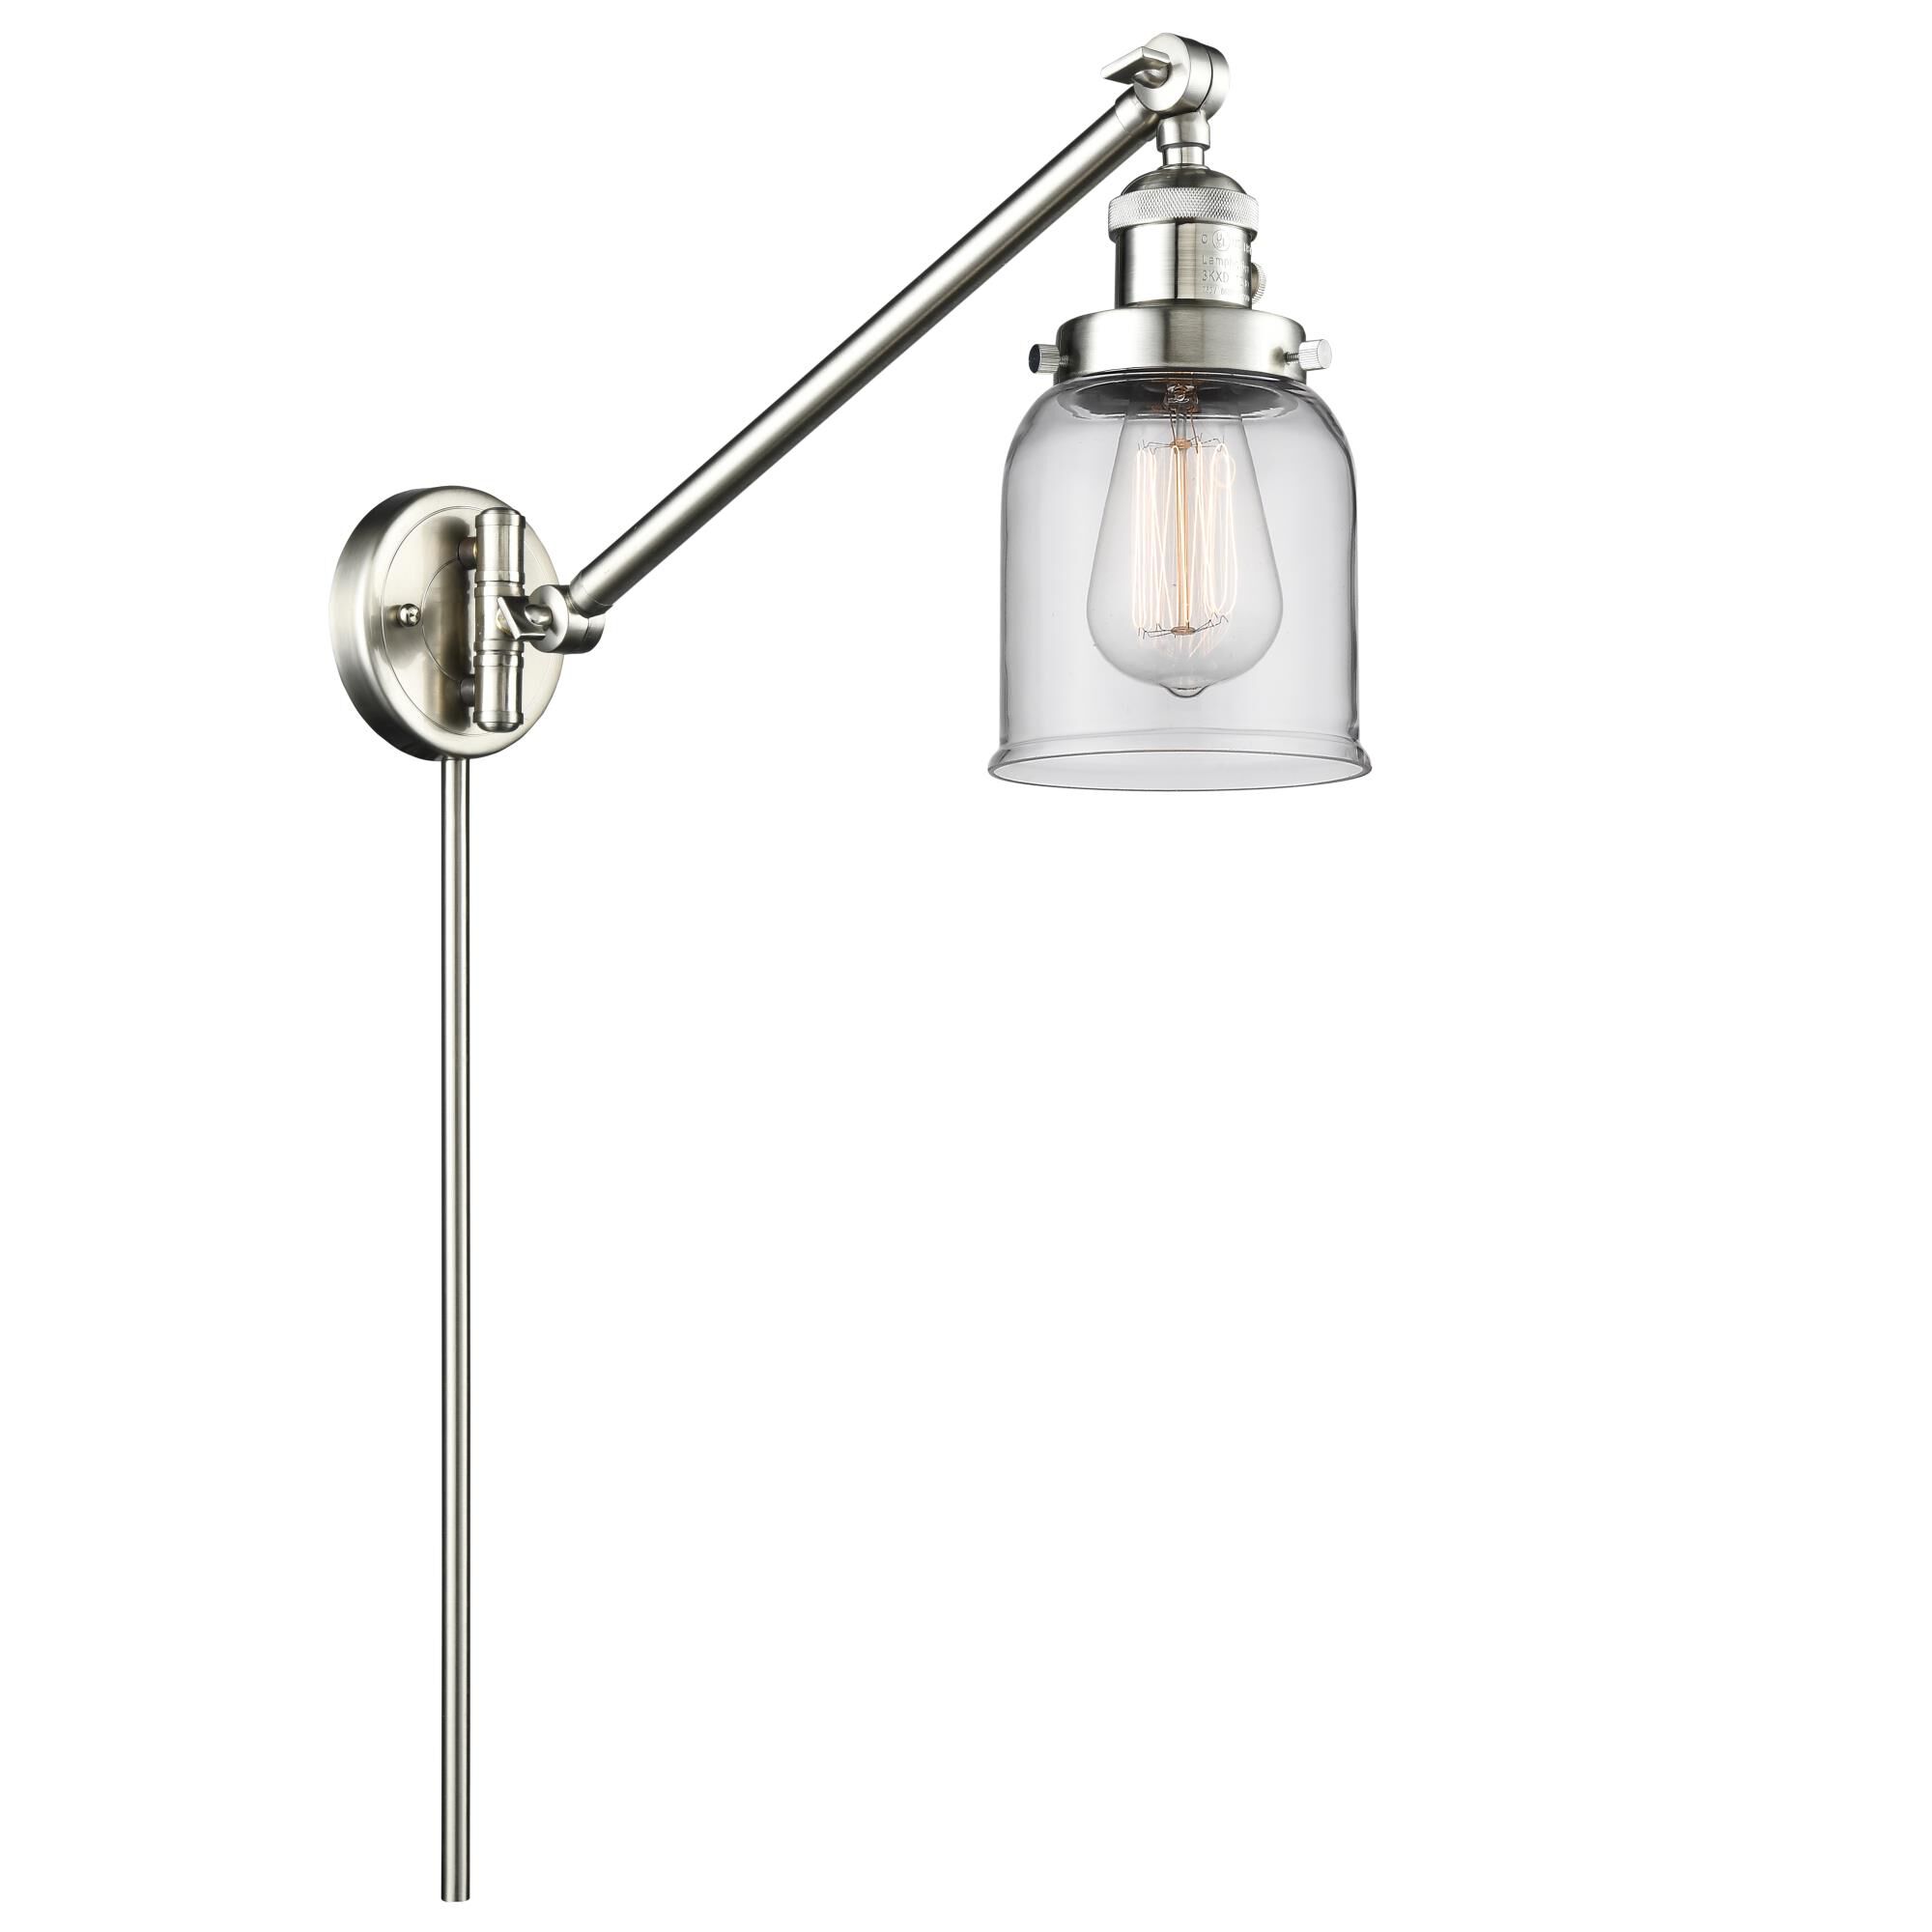 Photos - Floodlight / Garden Lamps Innovations Lighting Bruno Marashlian Small Bell Wall Swing Lamp Small Bel